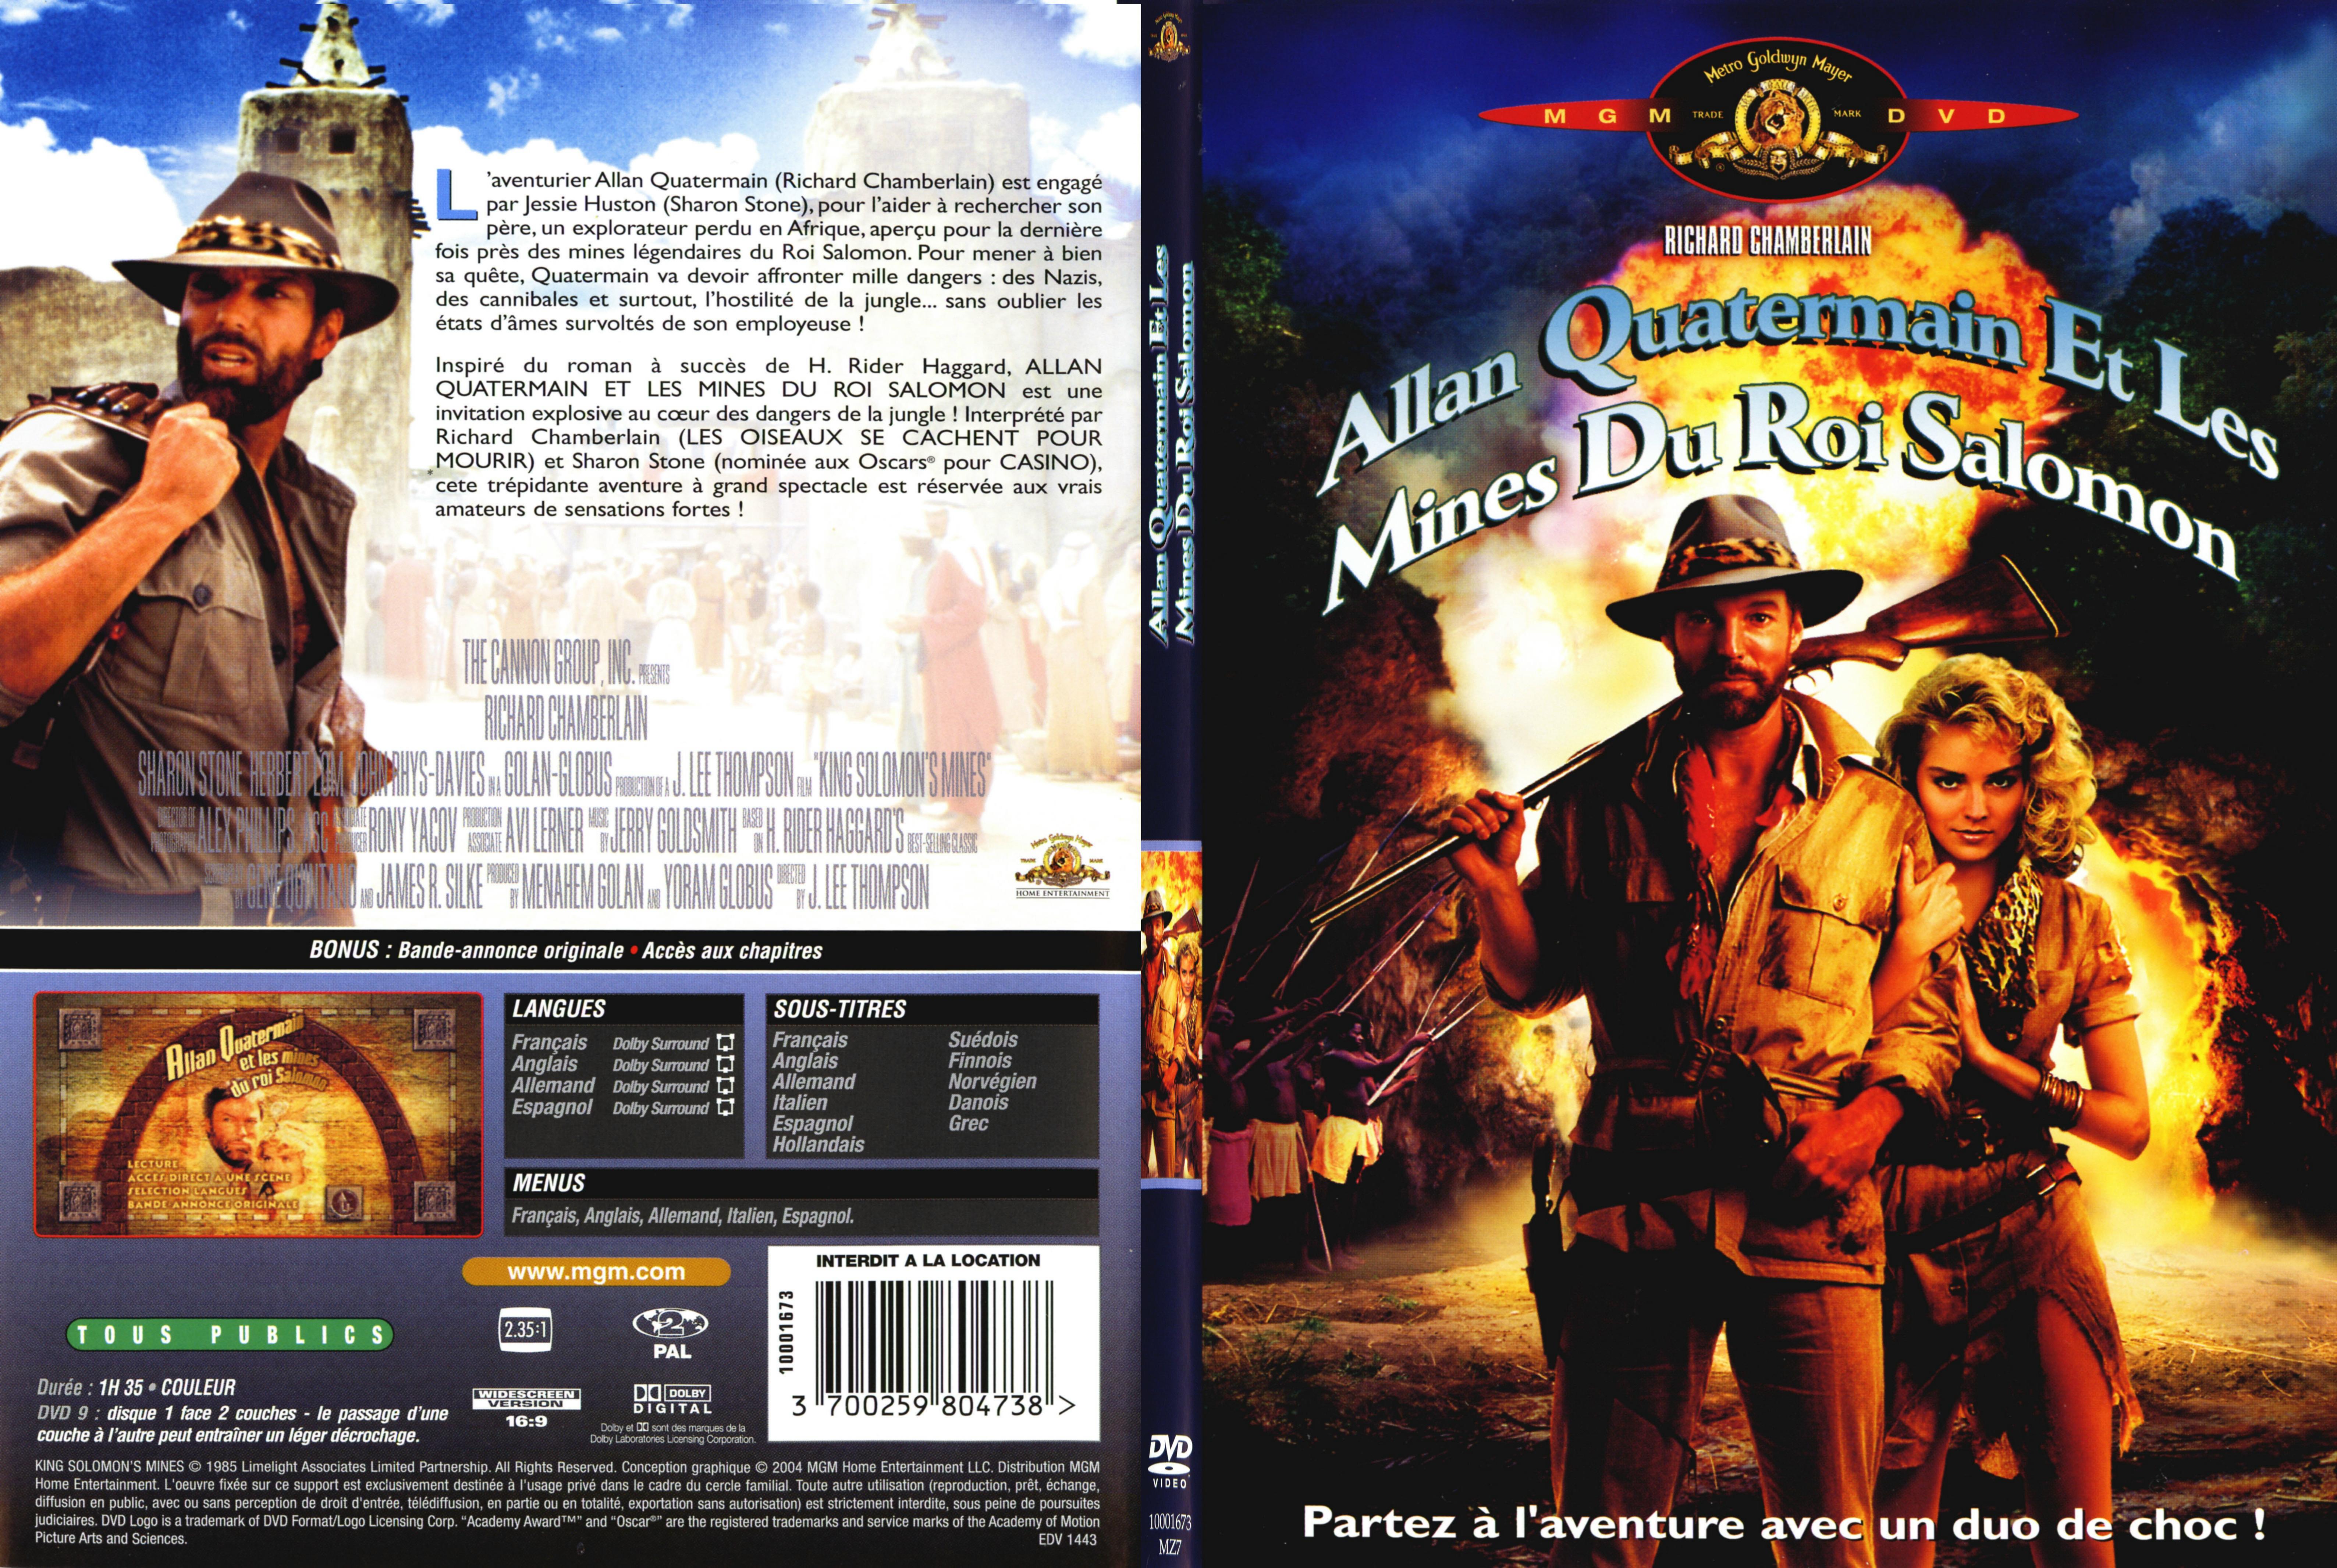 Jaquette DVD Allan Quatermain et les mines du roi salomon - SLIM